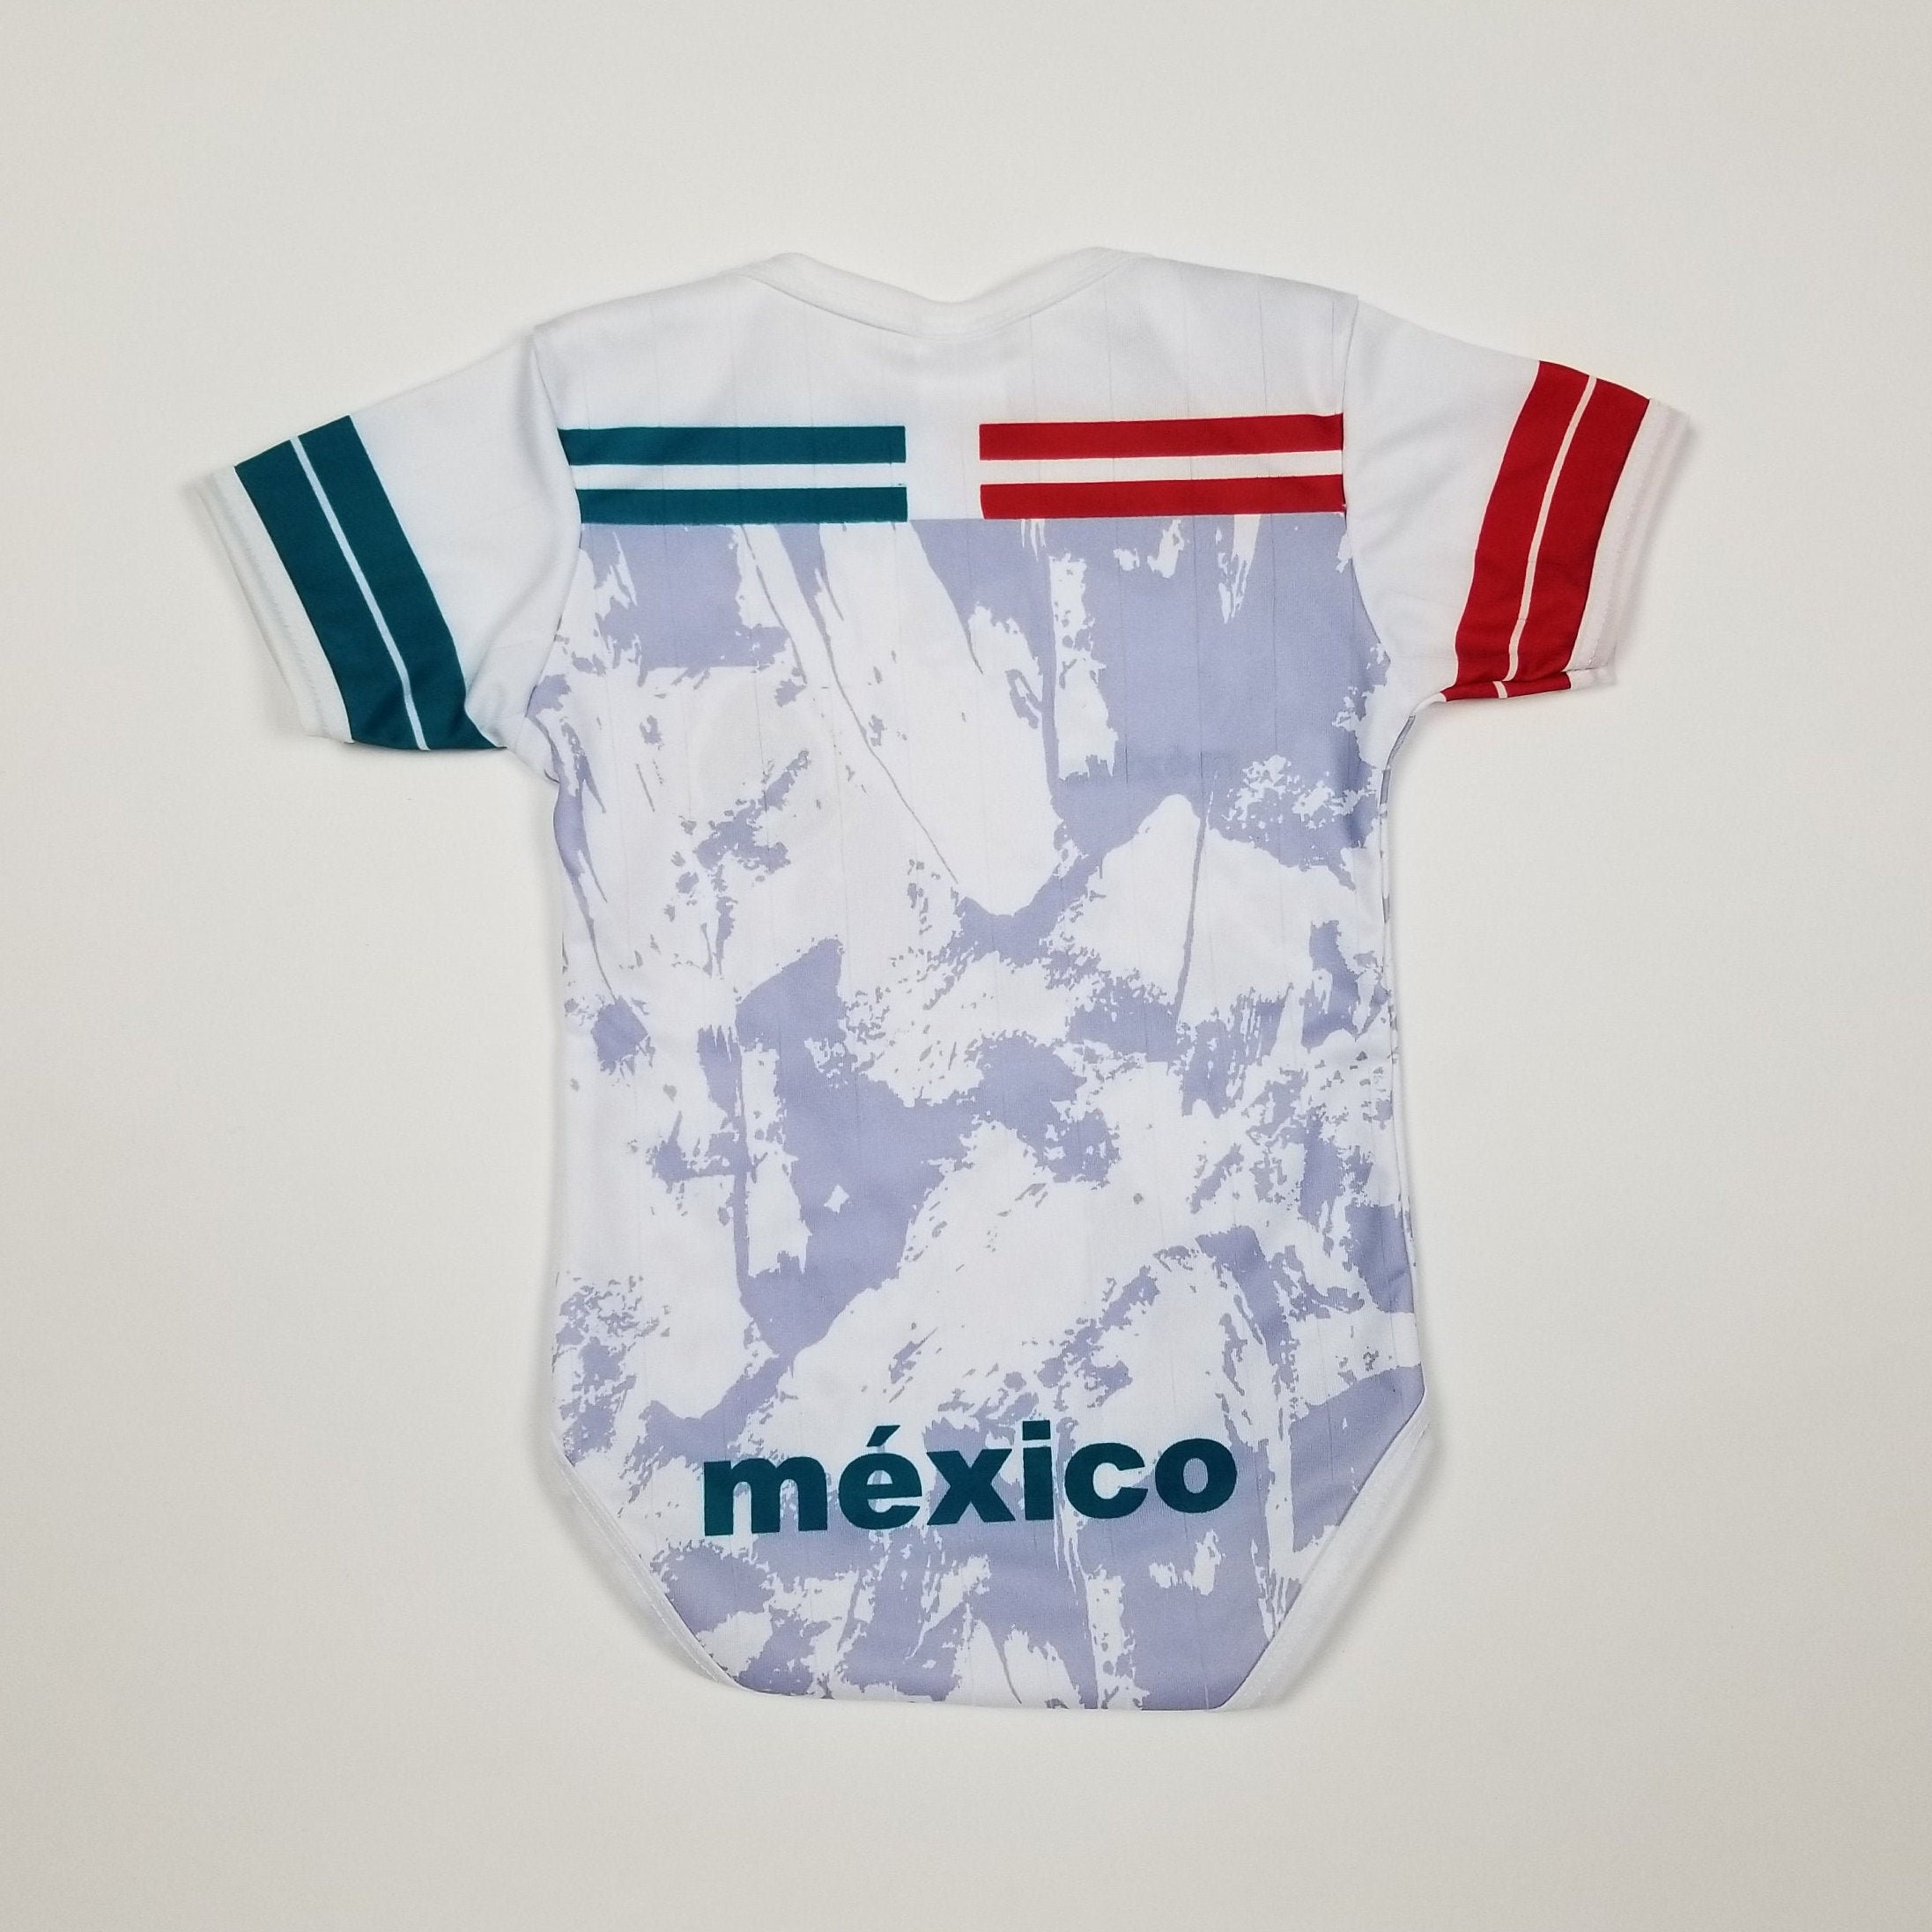 mexico baseball jersey 2020